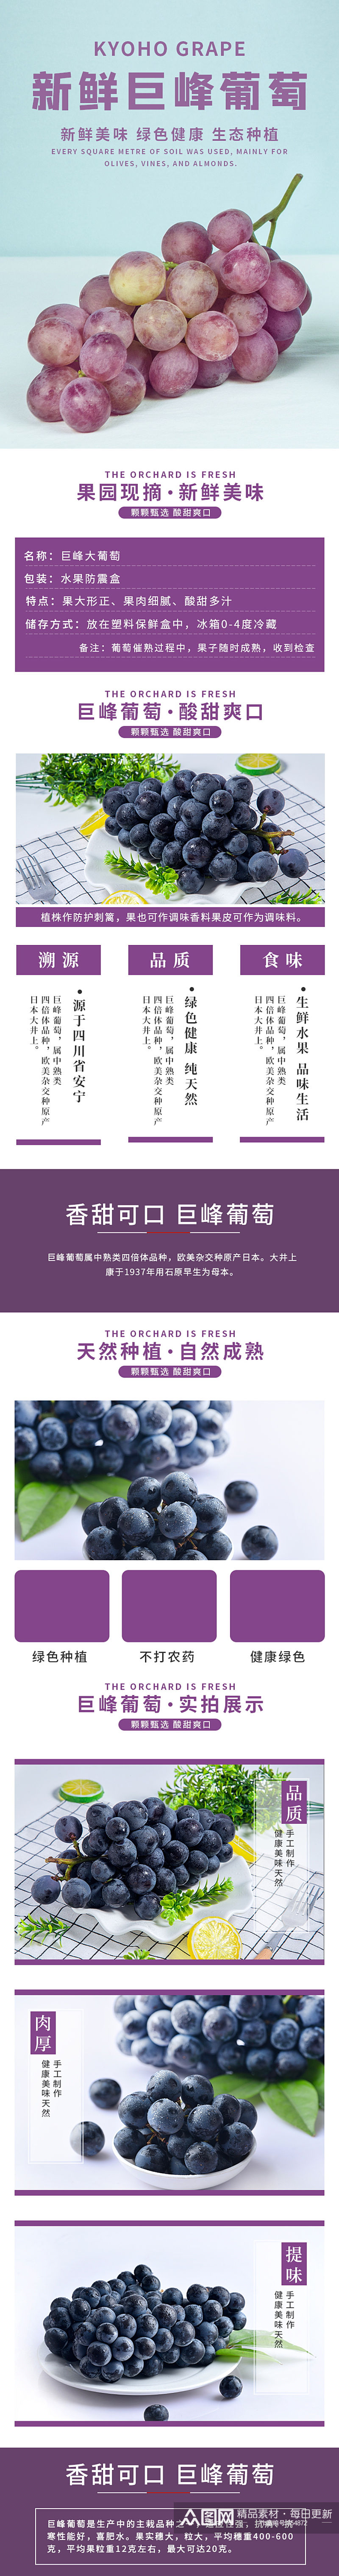 简约紫色生鲜水果巨峰葡萄详情页素材